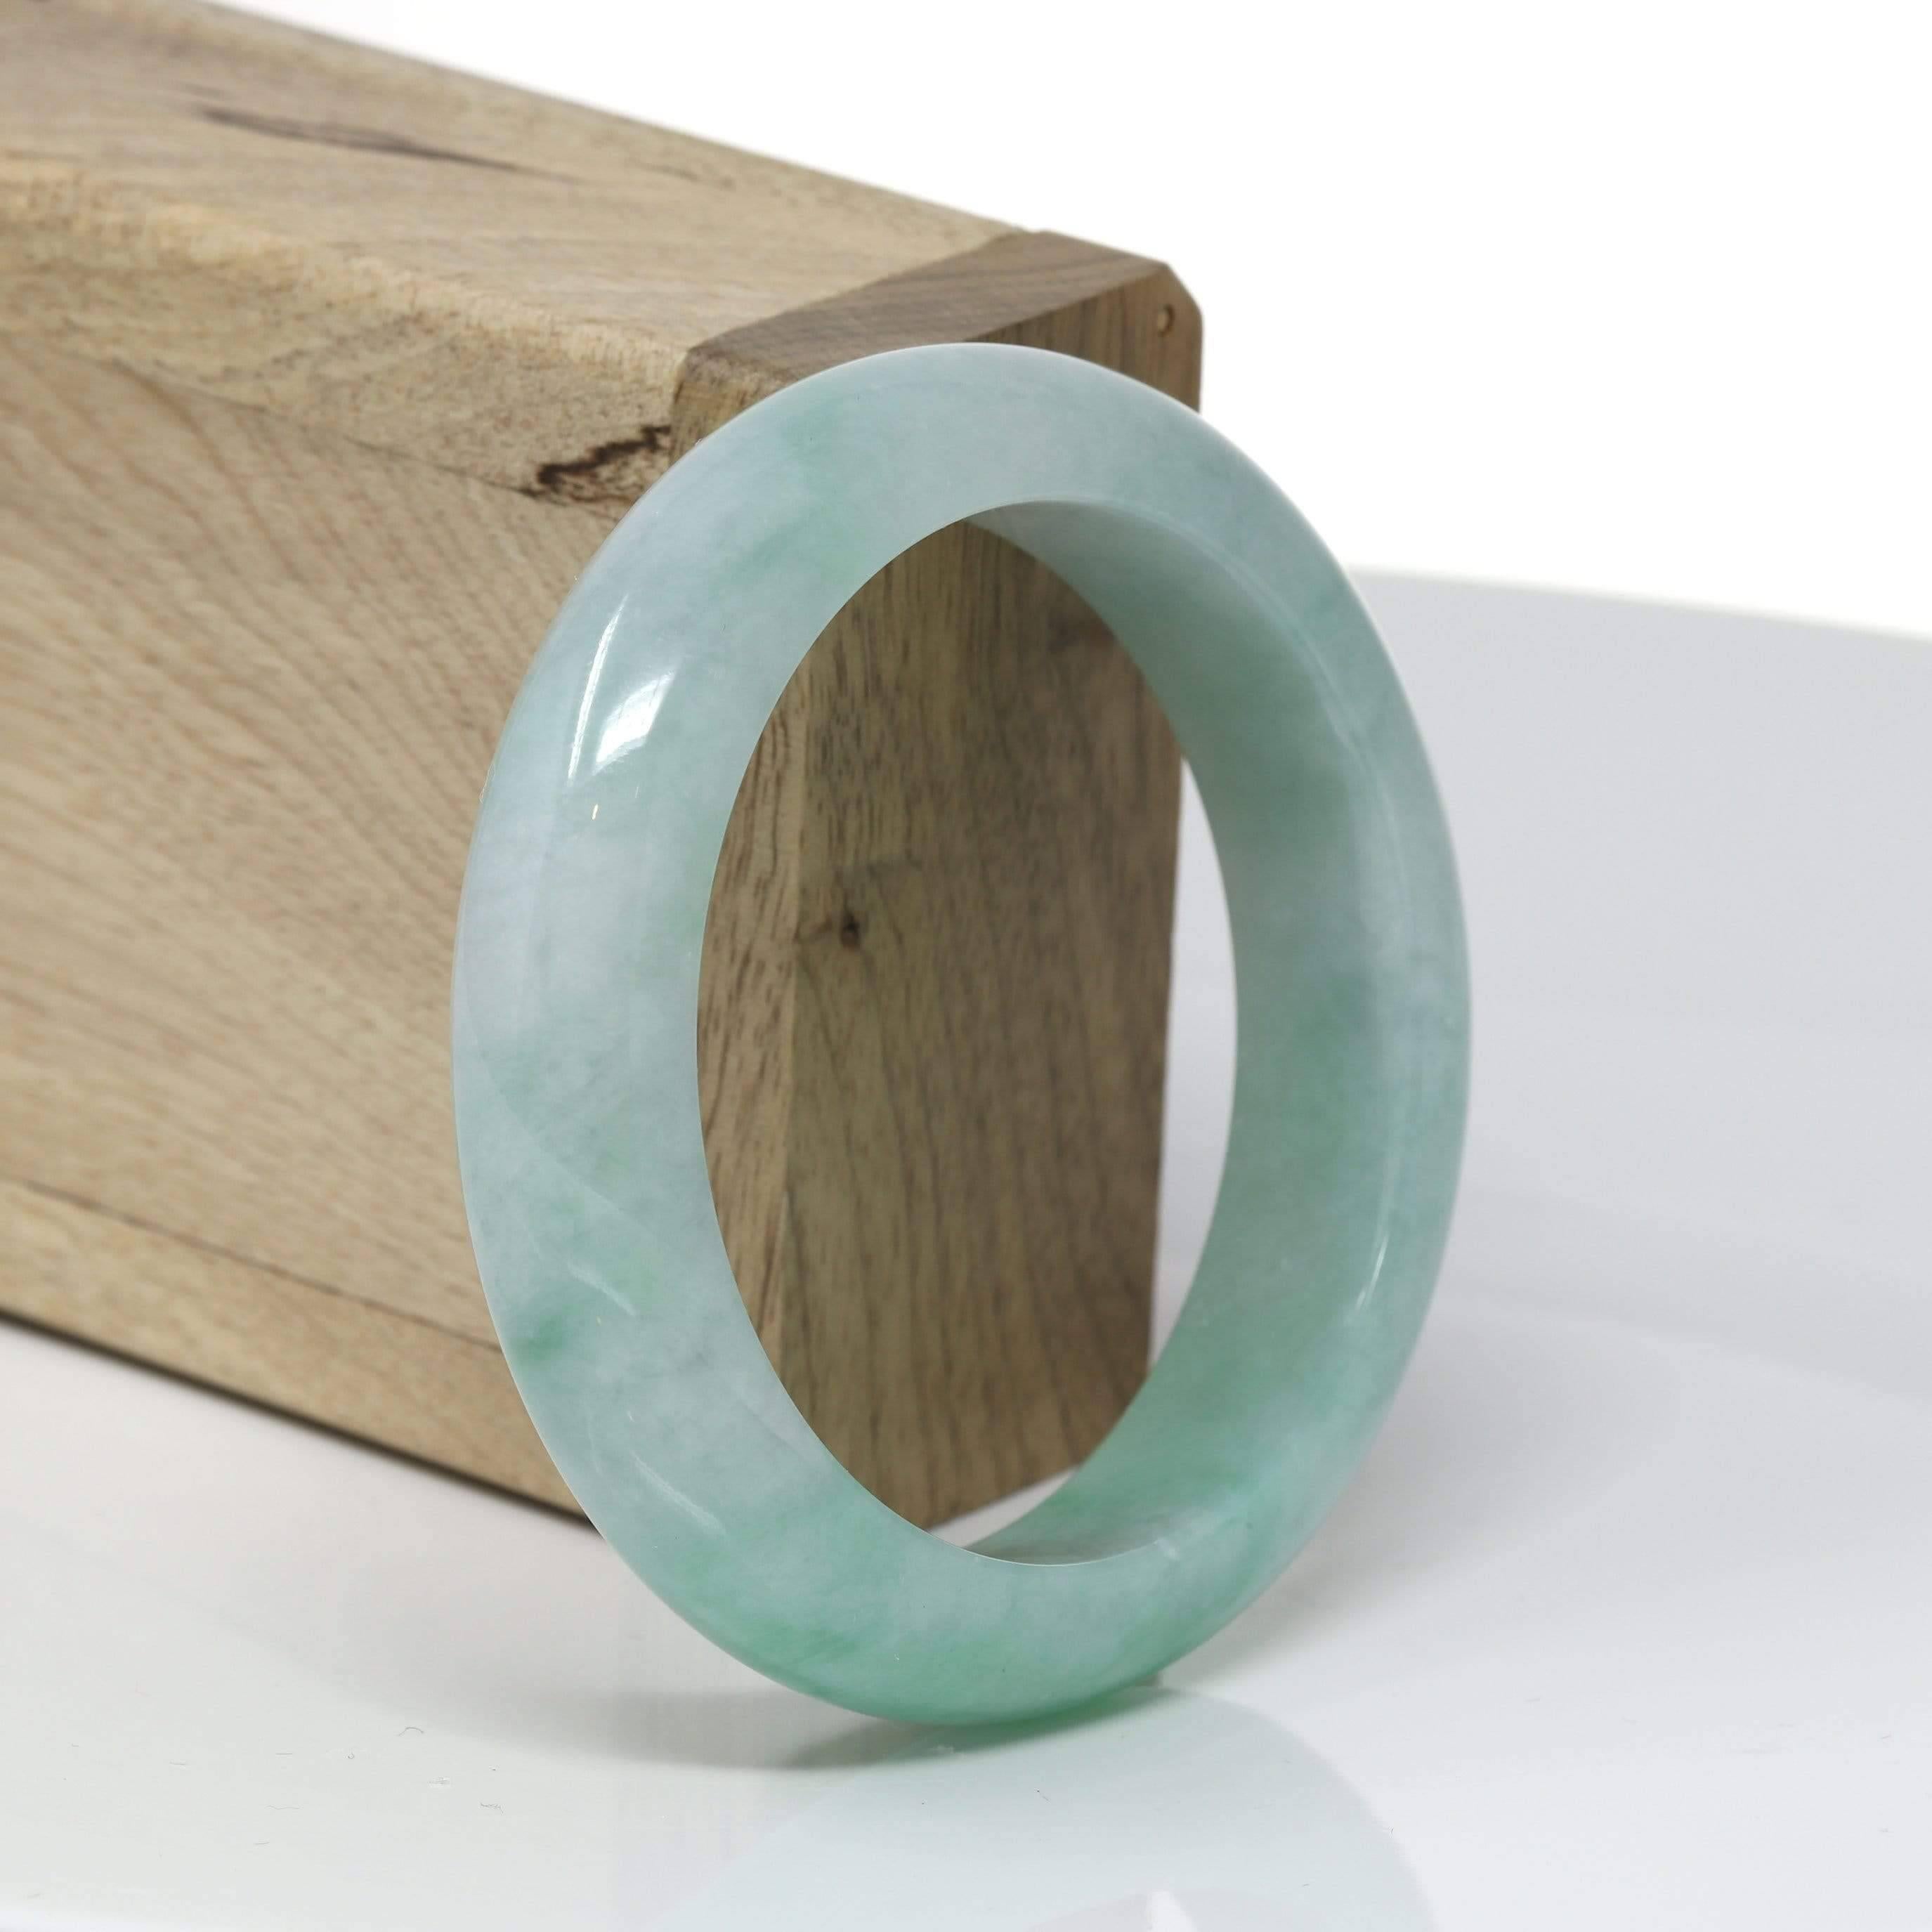 * DETAILS--- Ce bracelet en jadéite birmane naturelle de haute qualité est d'un beau vert pomme sur toute sa surface, comme le montrent les photos. La texture et la couleur sont très homogènes sur l'ensemble du bracelet, qui est très translucide à